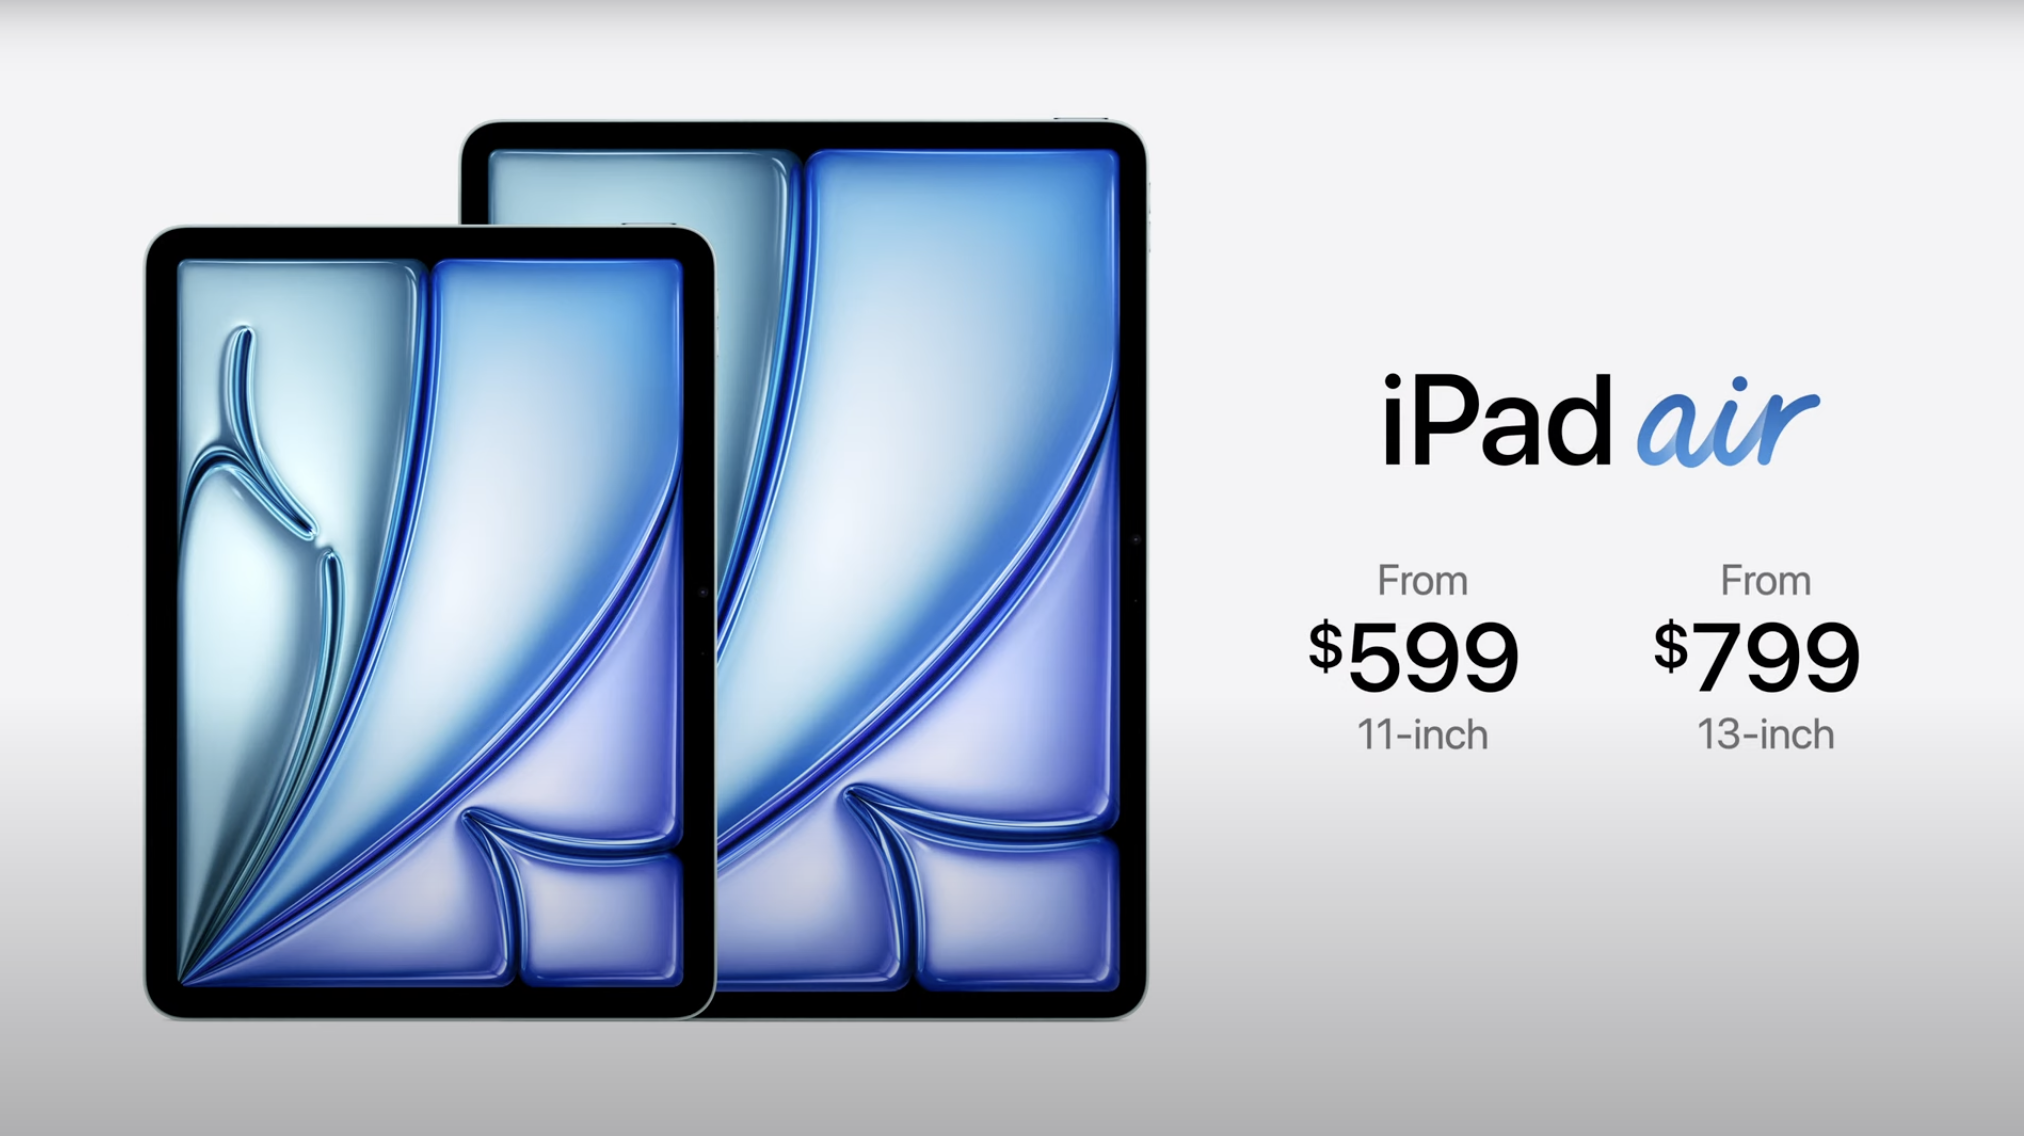 Apple iPads mit M4 - Die etwas andere Analyse!